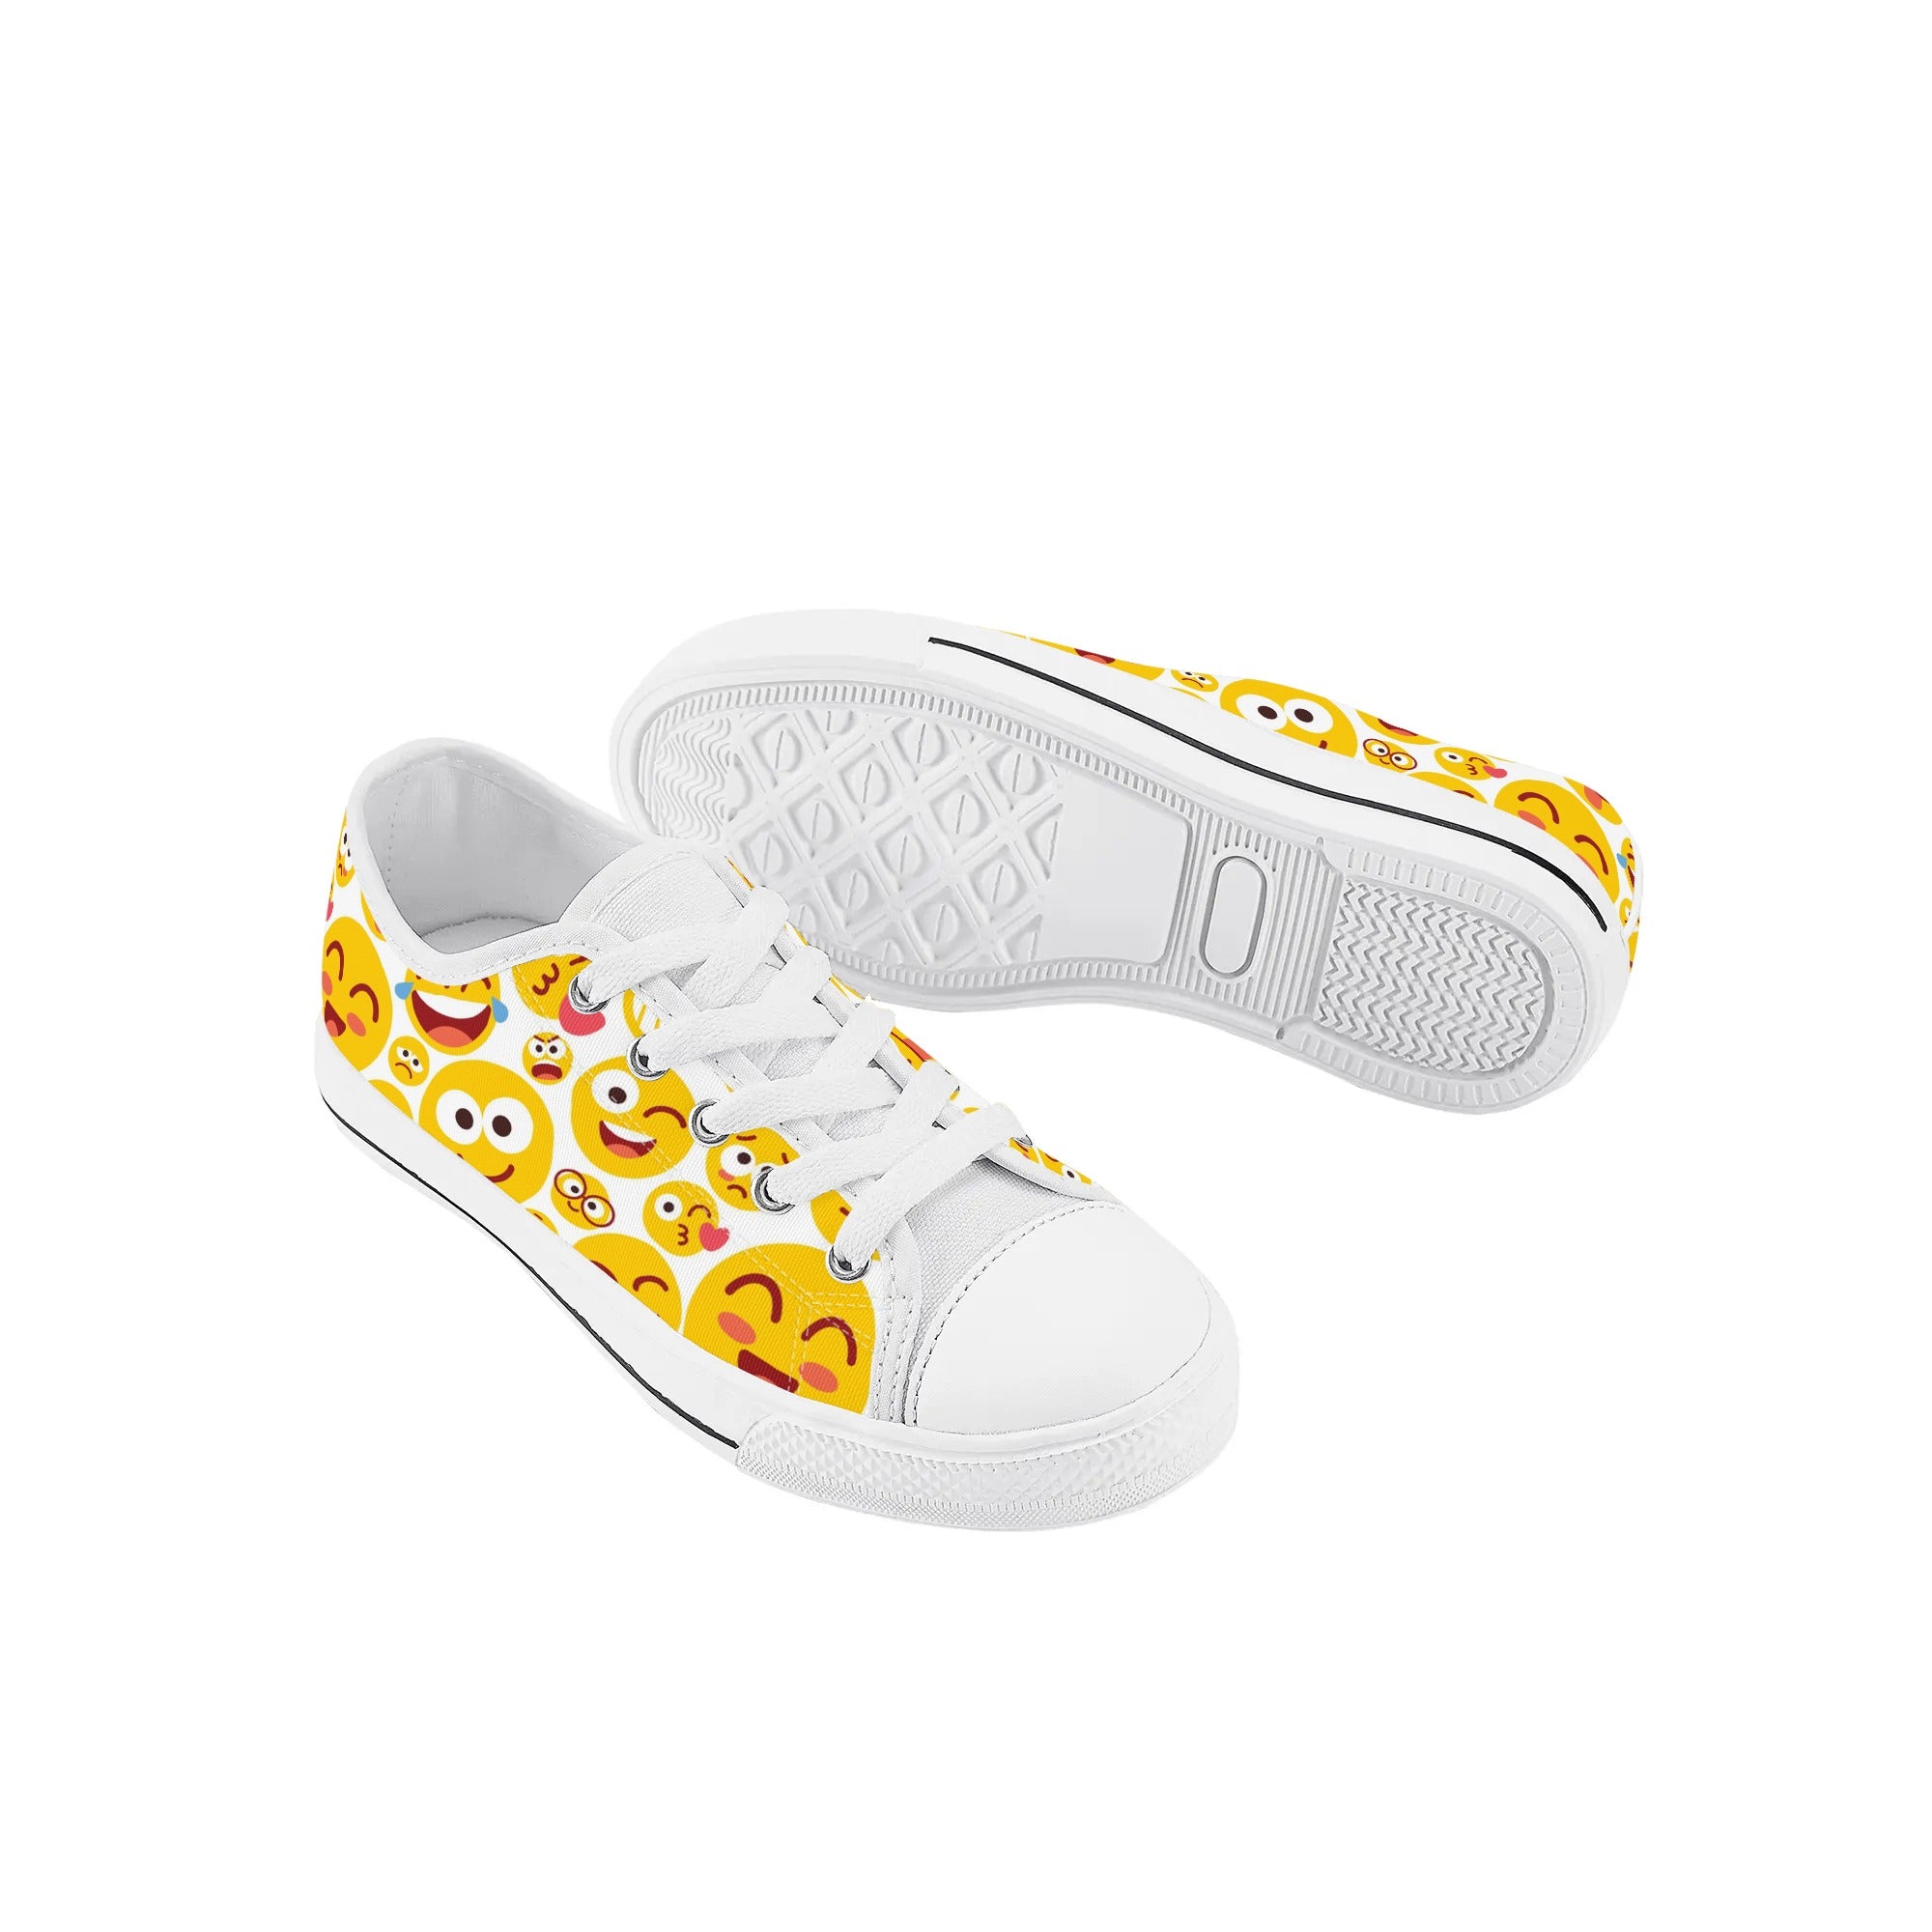 Chaussures basses en toile pour enfants - Emojis